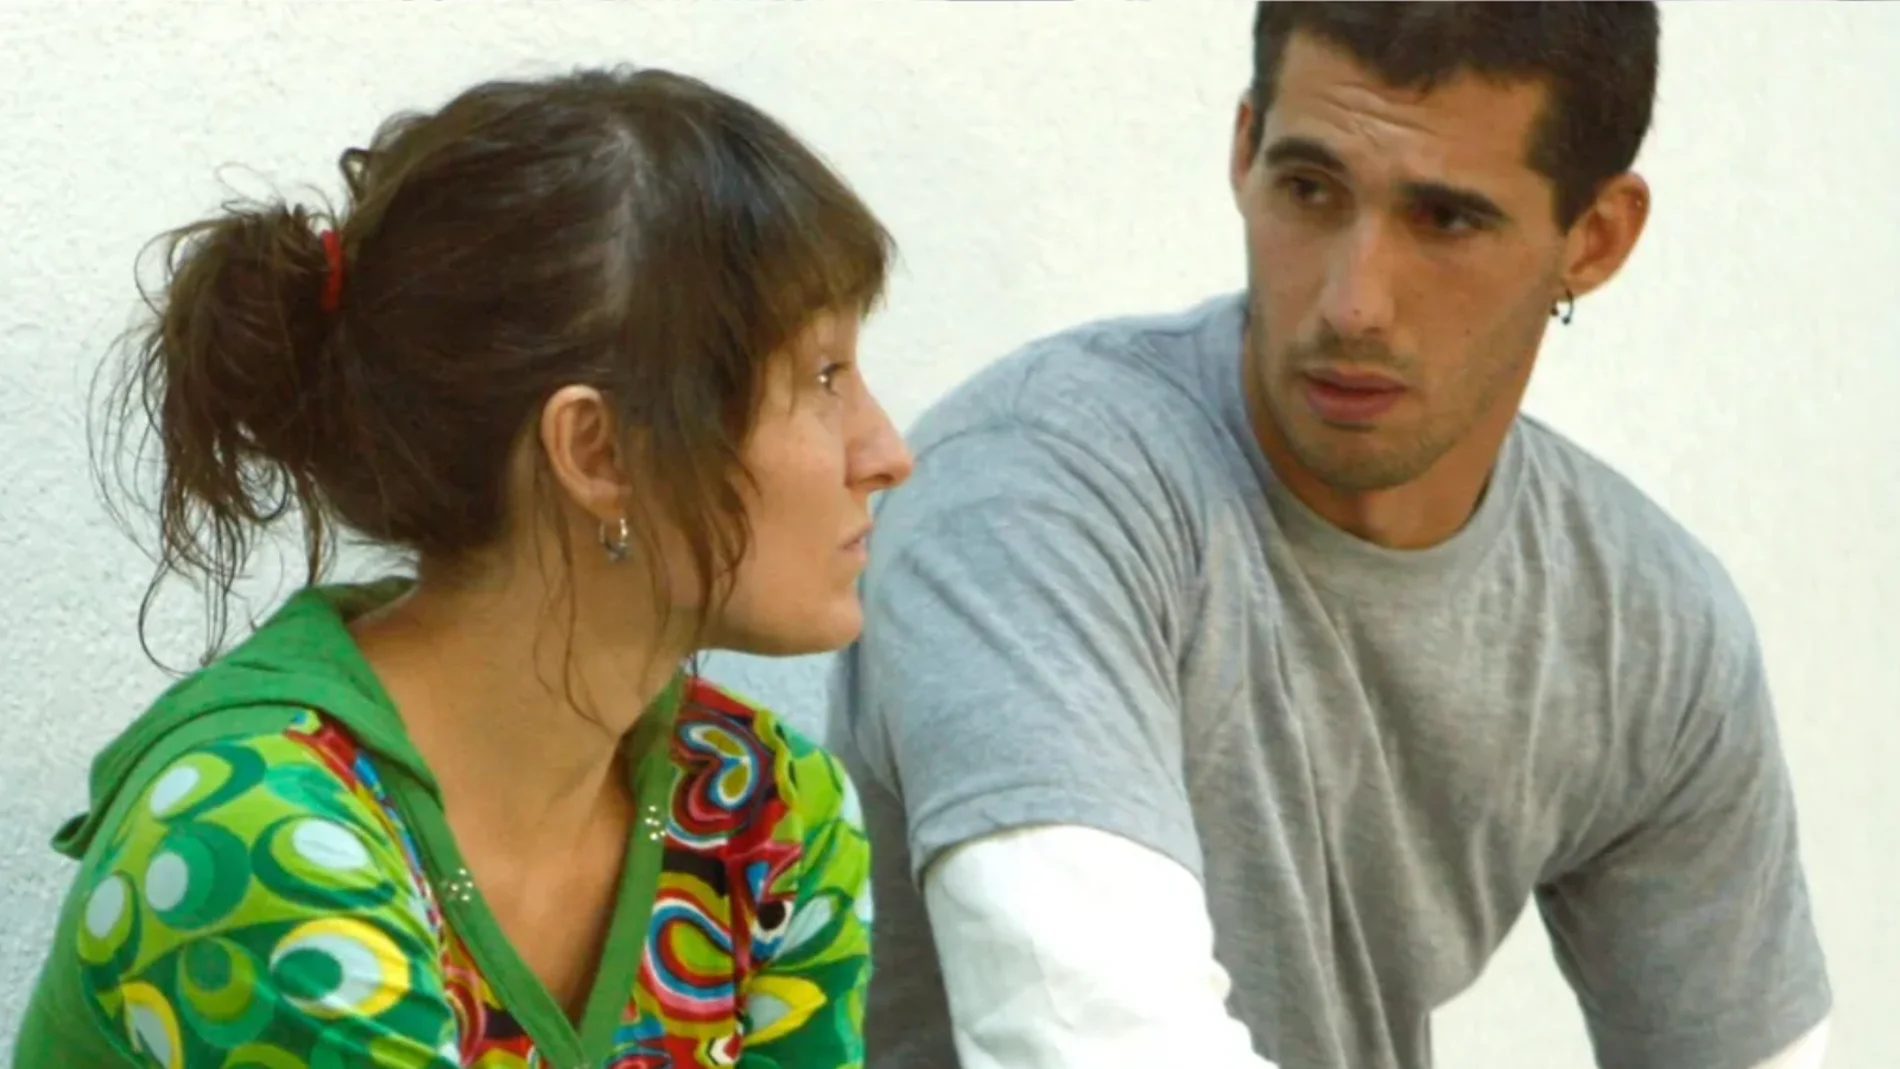 Los etarras Josuñe Oña y Asier Mardones en 2008 en la Audiencia Nacional durante el juicio contra ellos por su intervención en septiembre de 2003 en un tiroteo con la Ertzaintza en el Alto de Herrera (Alava)